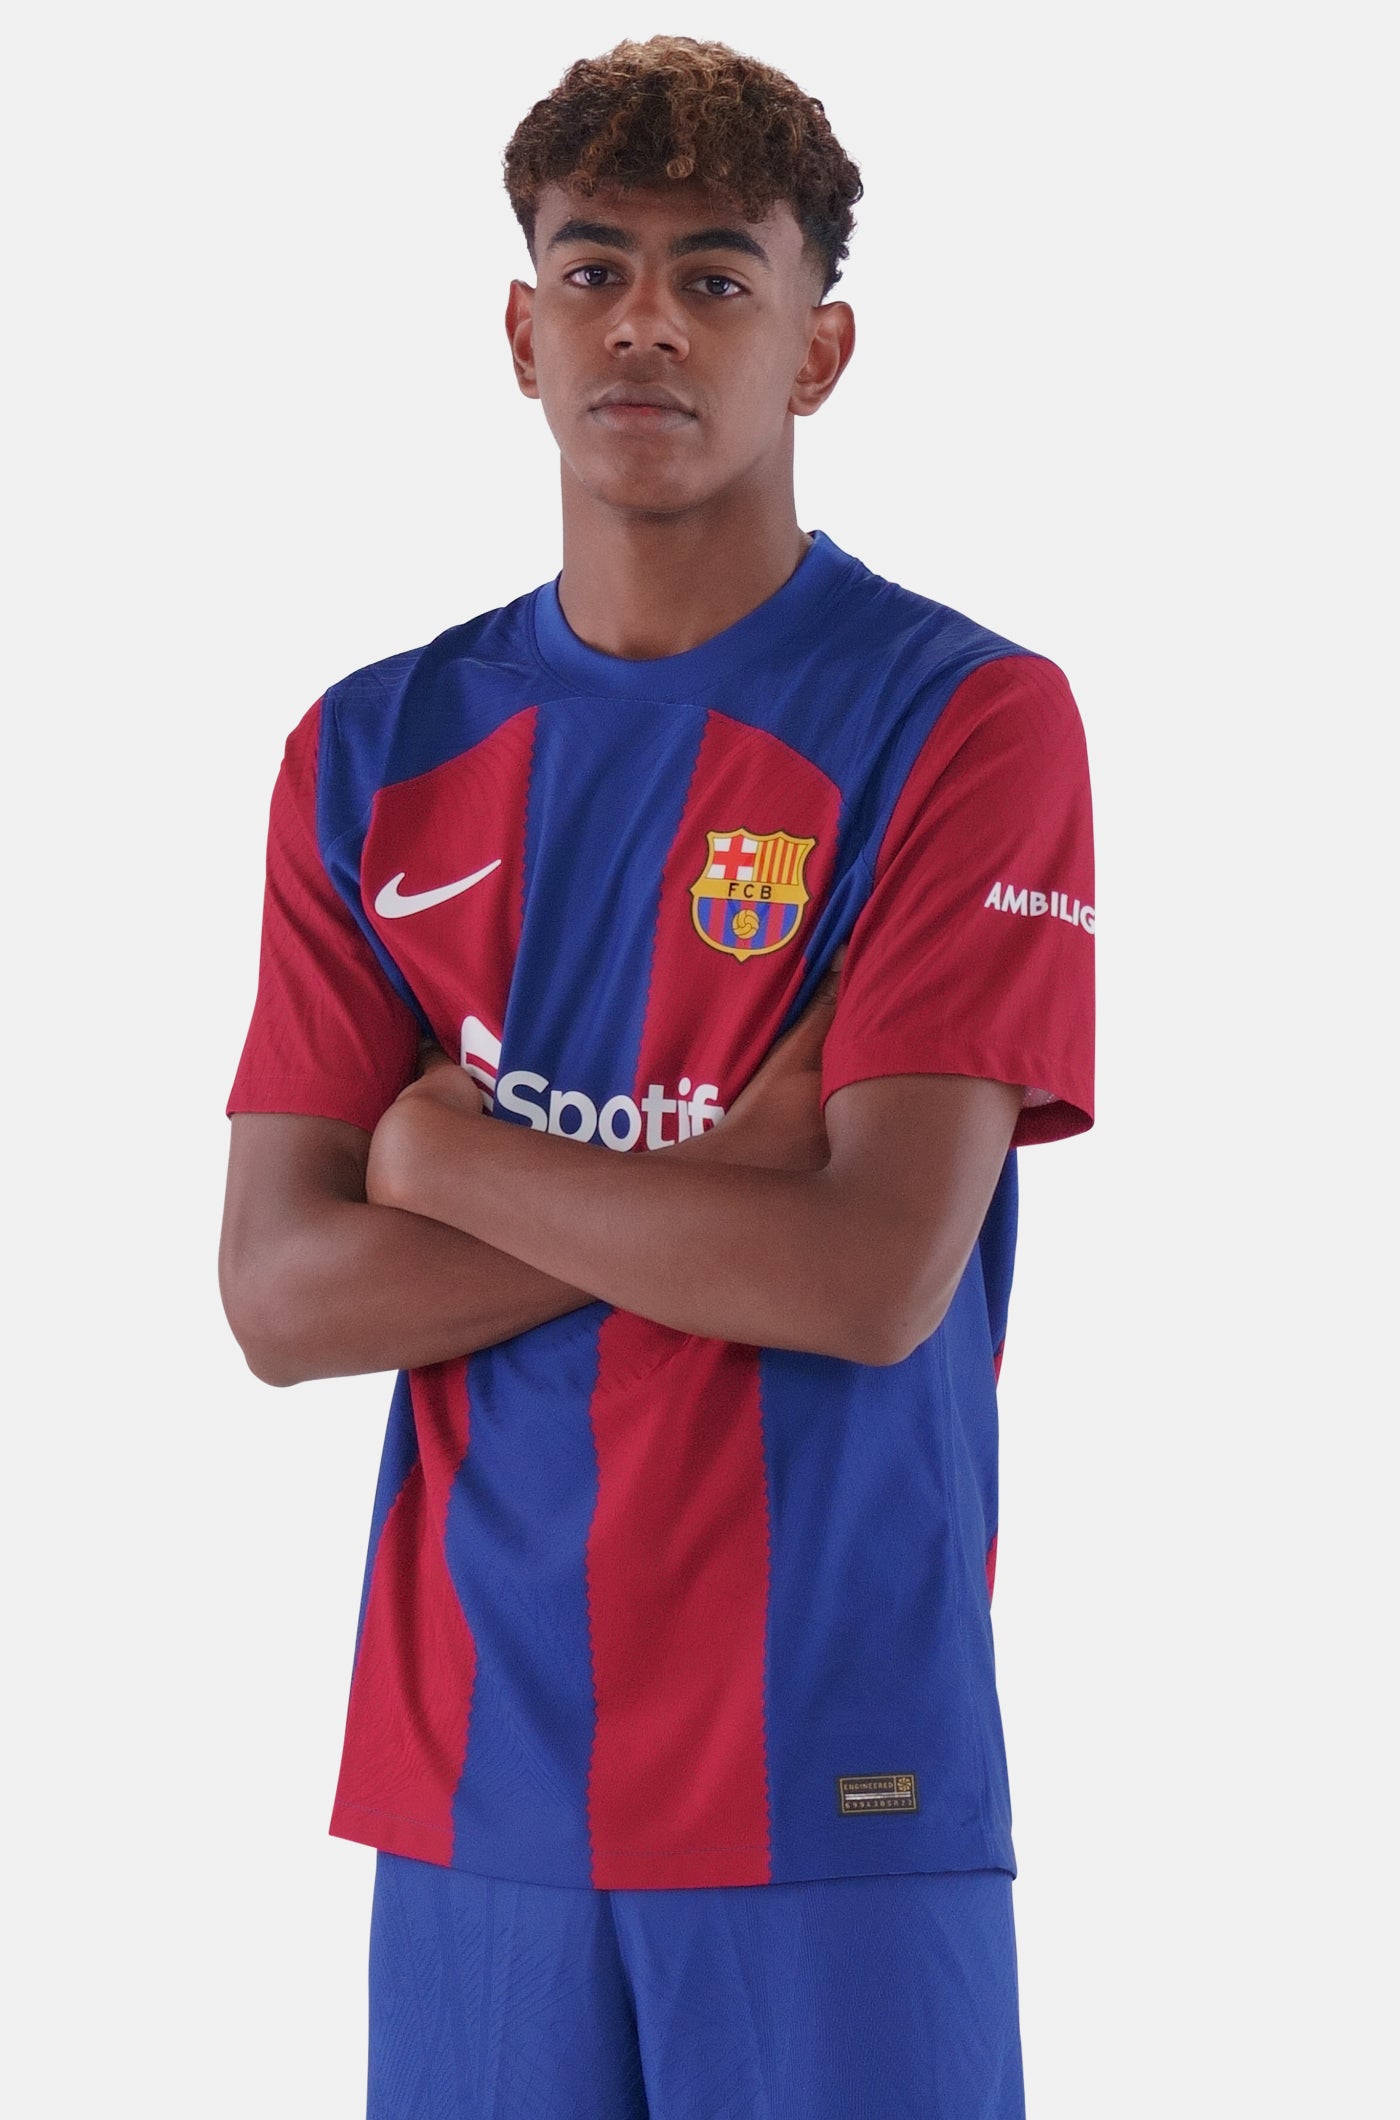 27. Lamine Yamal – Barça Official Store Spotify Camp Nou